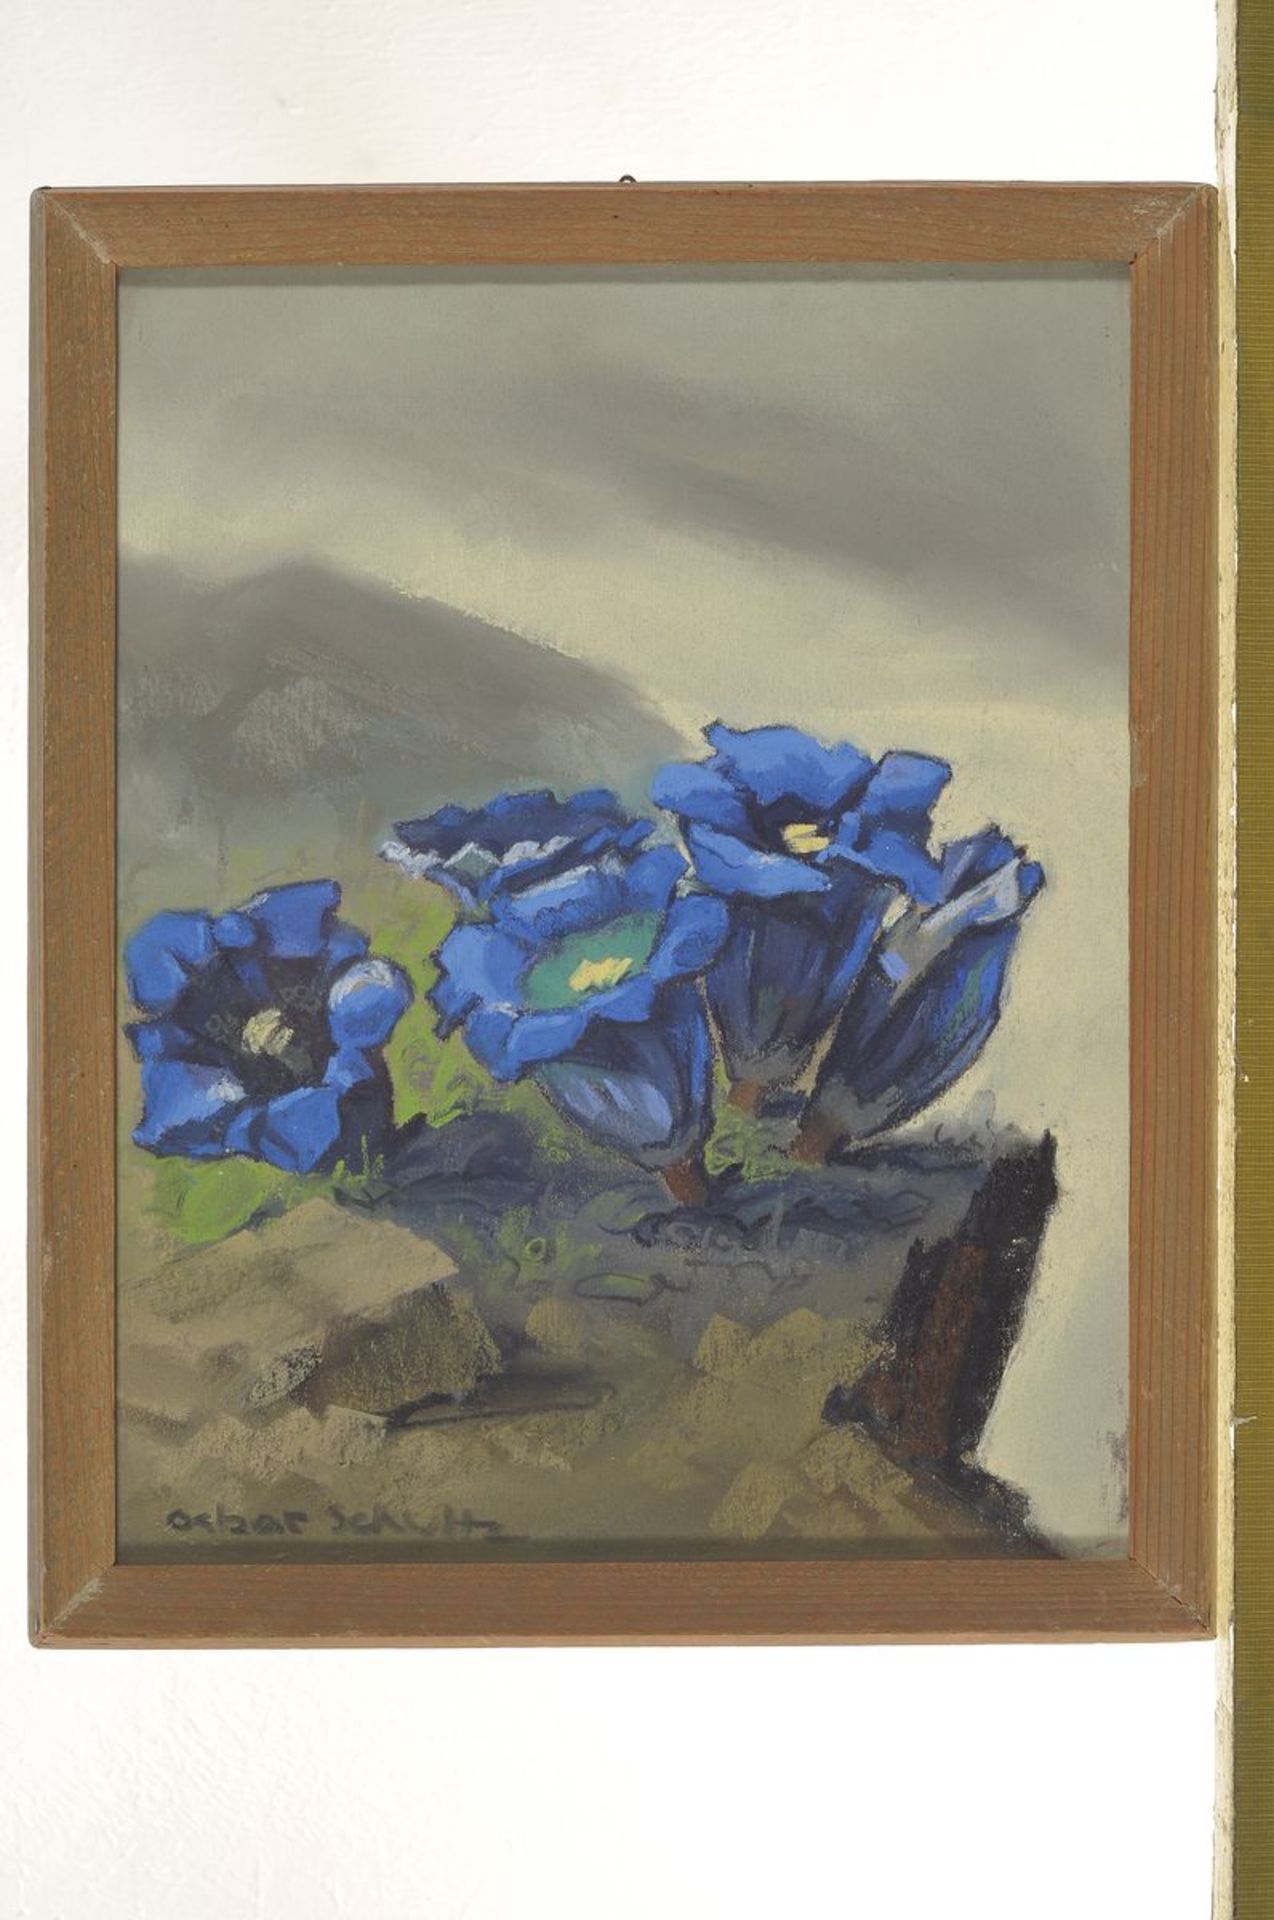 Oskar Schultz, 1892-1971, süddeutscher Maler, Ausbildung an der Münchner Akademie bei Heinrich von - Bild 3 aus 3